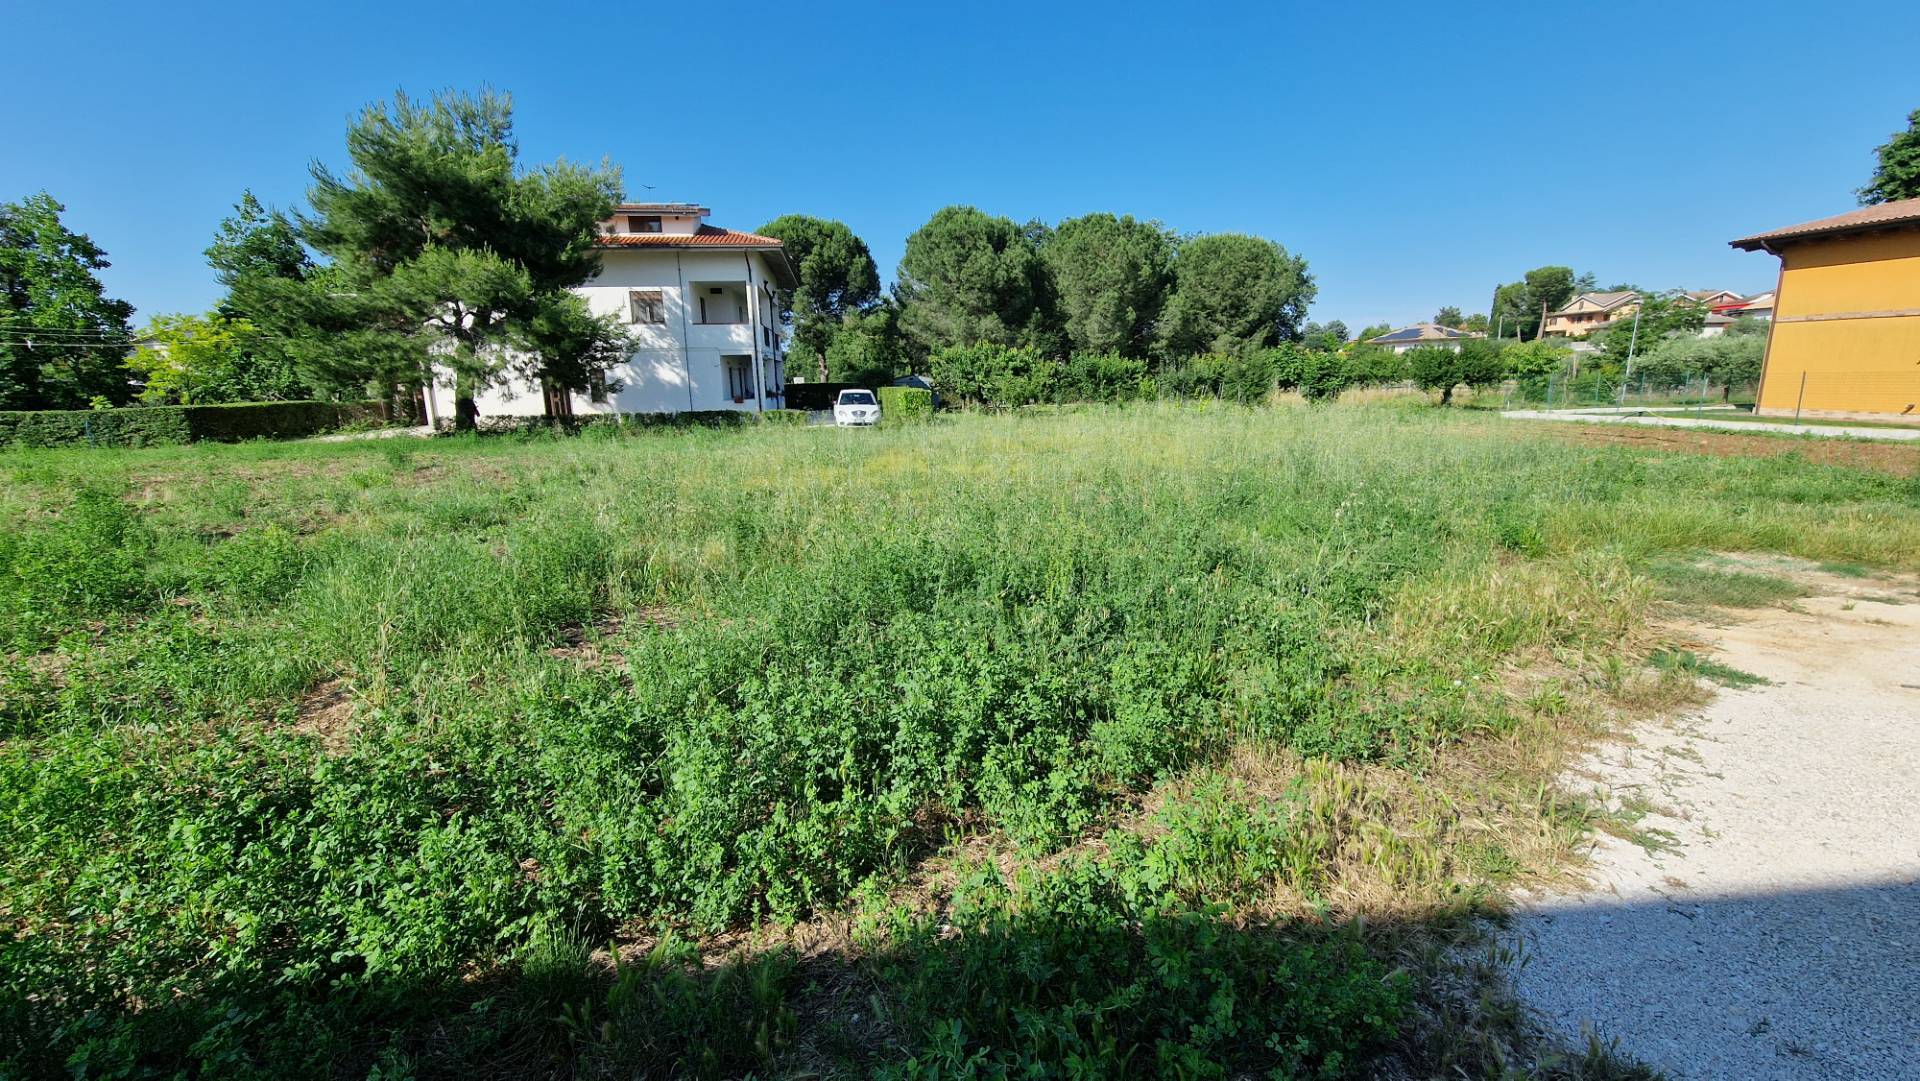 Terreno Edificabile Residenziale in vendita a Cepagatti, 9999 locali, zona Località: S.Agata, prezzo € 58.000 | PortaleAgenzieImmobiliari.it